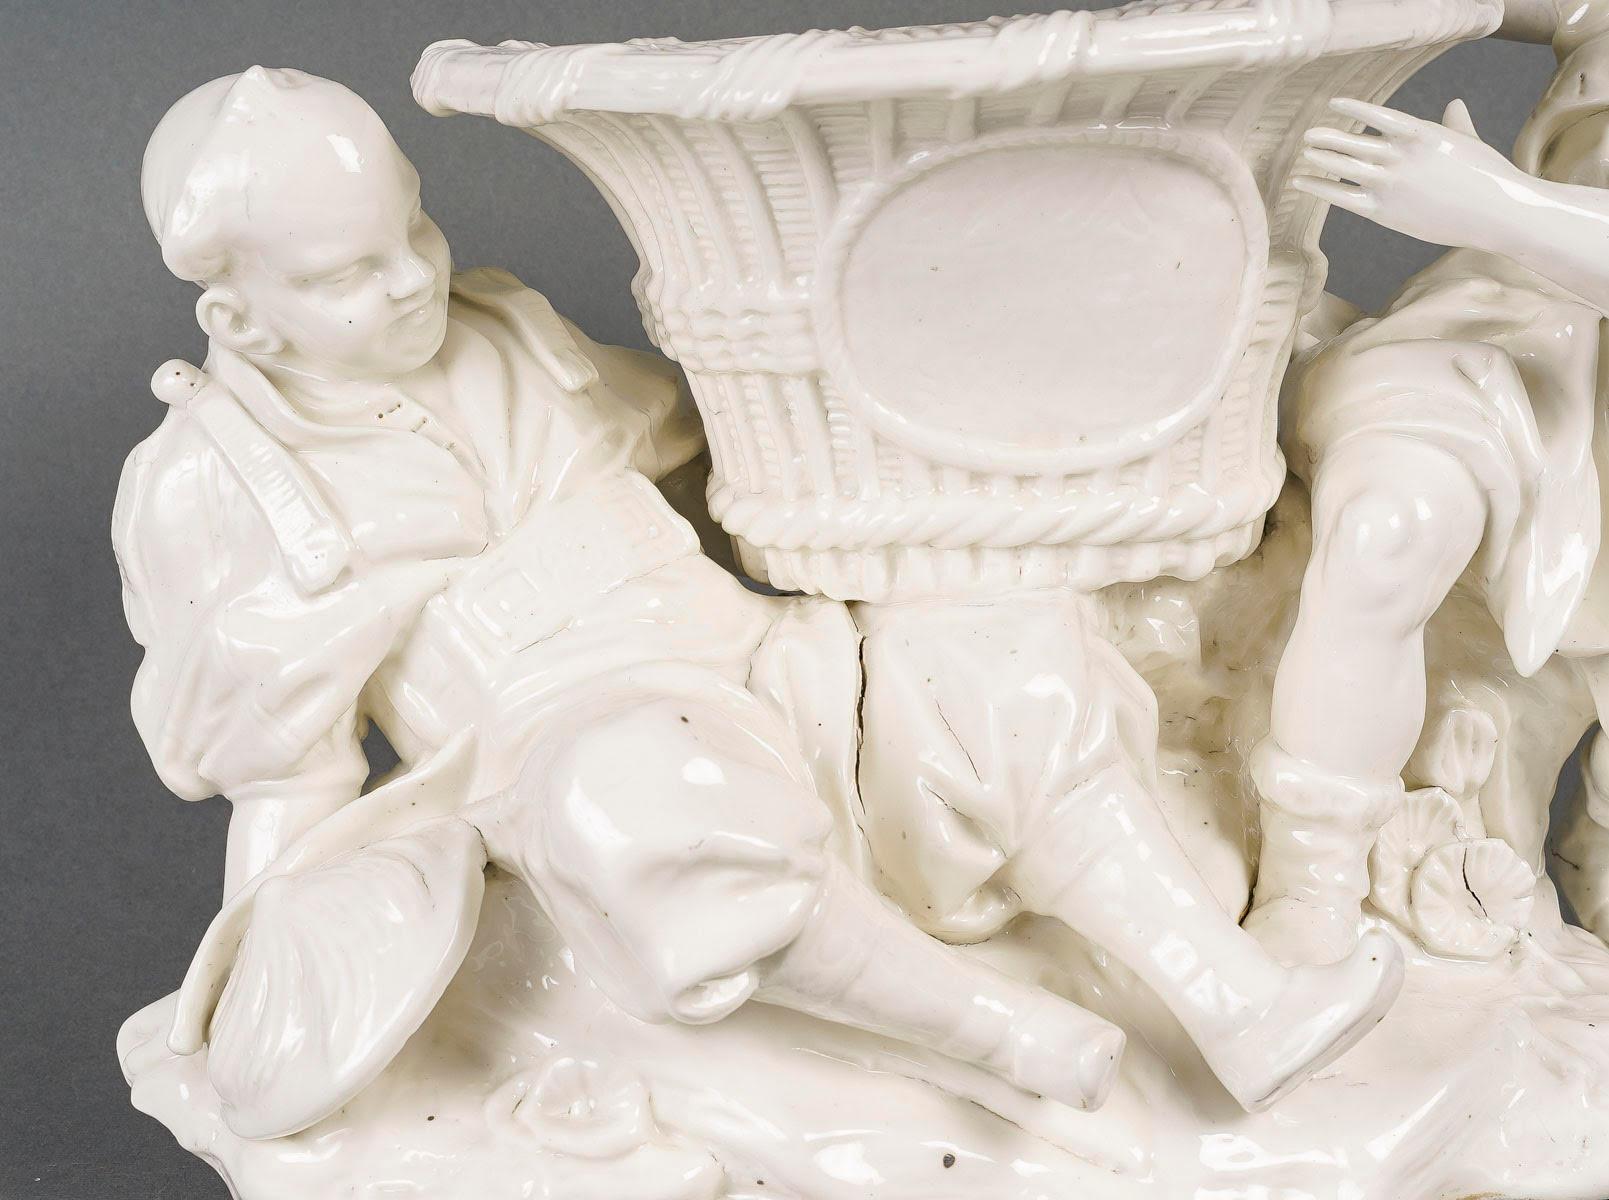 Jardinière aus weißem Porzellan, chinesischer Stil, Anfang 20. Jahrhundert.

Weißes Porzellan-Chinoiserie-Pflanzgefäß aus dem frühen 20. Jahrhundert mit zwei Figuren, die den Blumentopf umgeben und ihn hervorheben, eine schöne Präsentation für einen